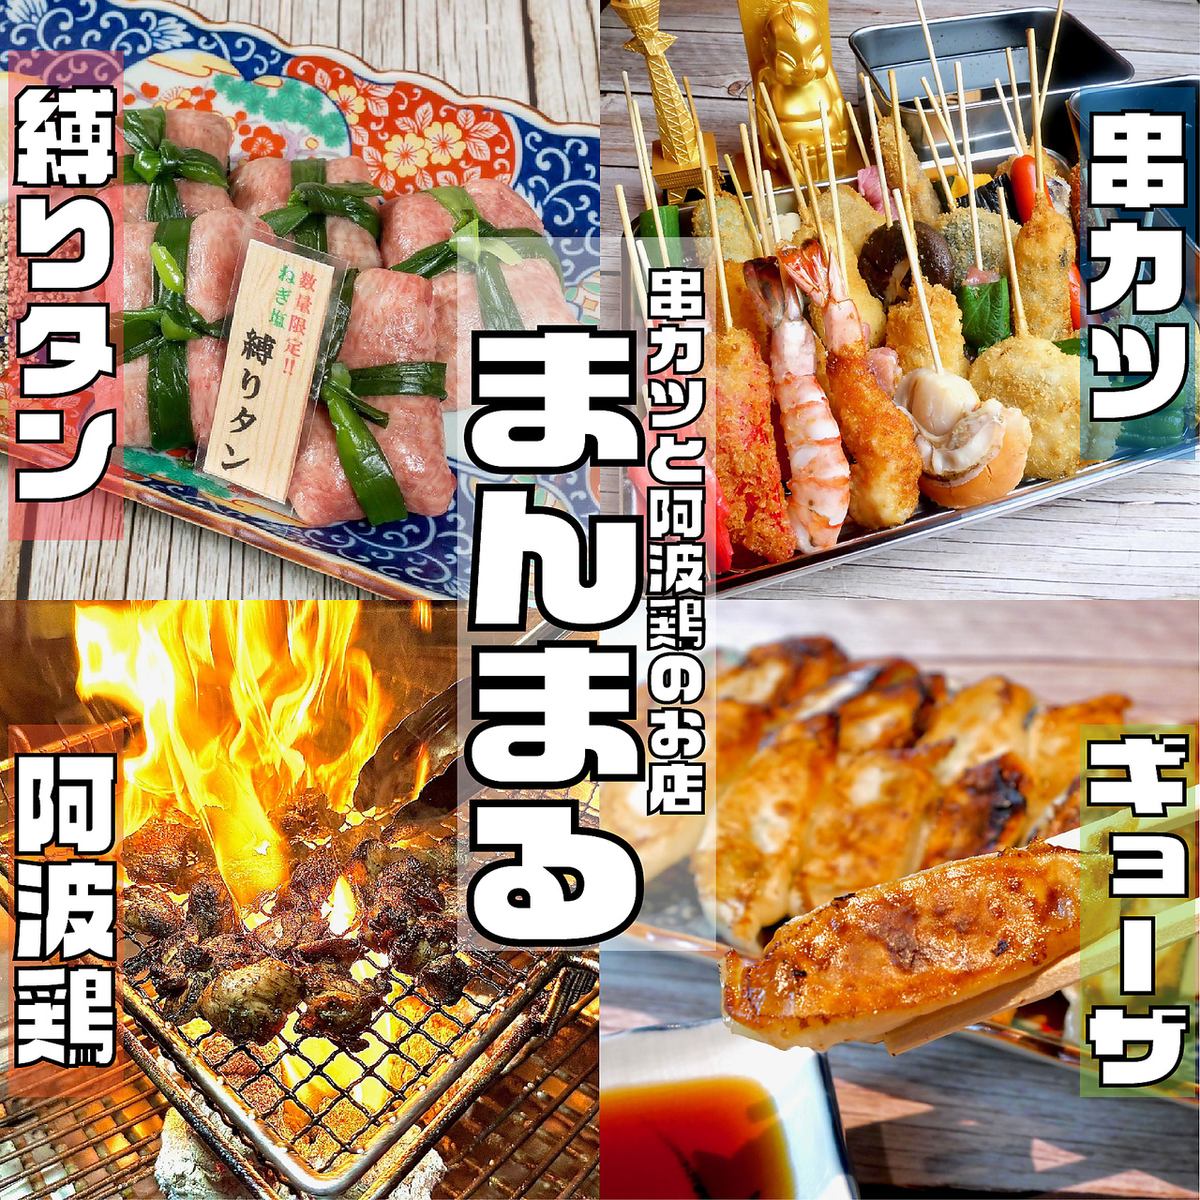 位於德島縣市中心秋田町的一家高性價比餐廳，可以品嚐到炭烤雞肉、肉壽司、炸串。